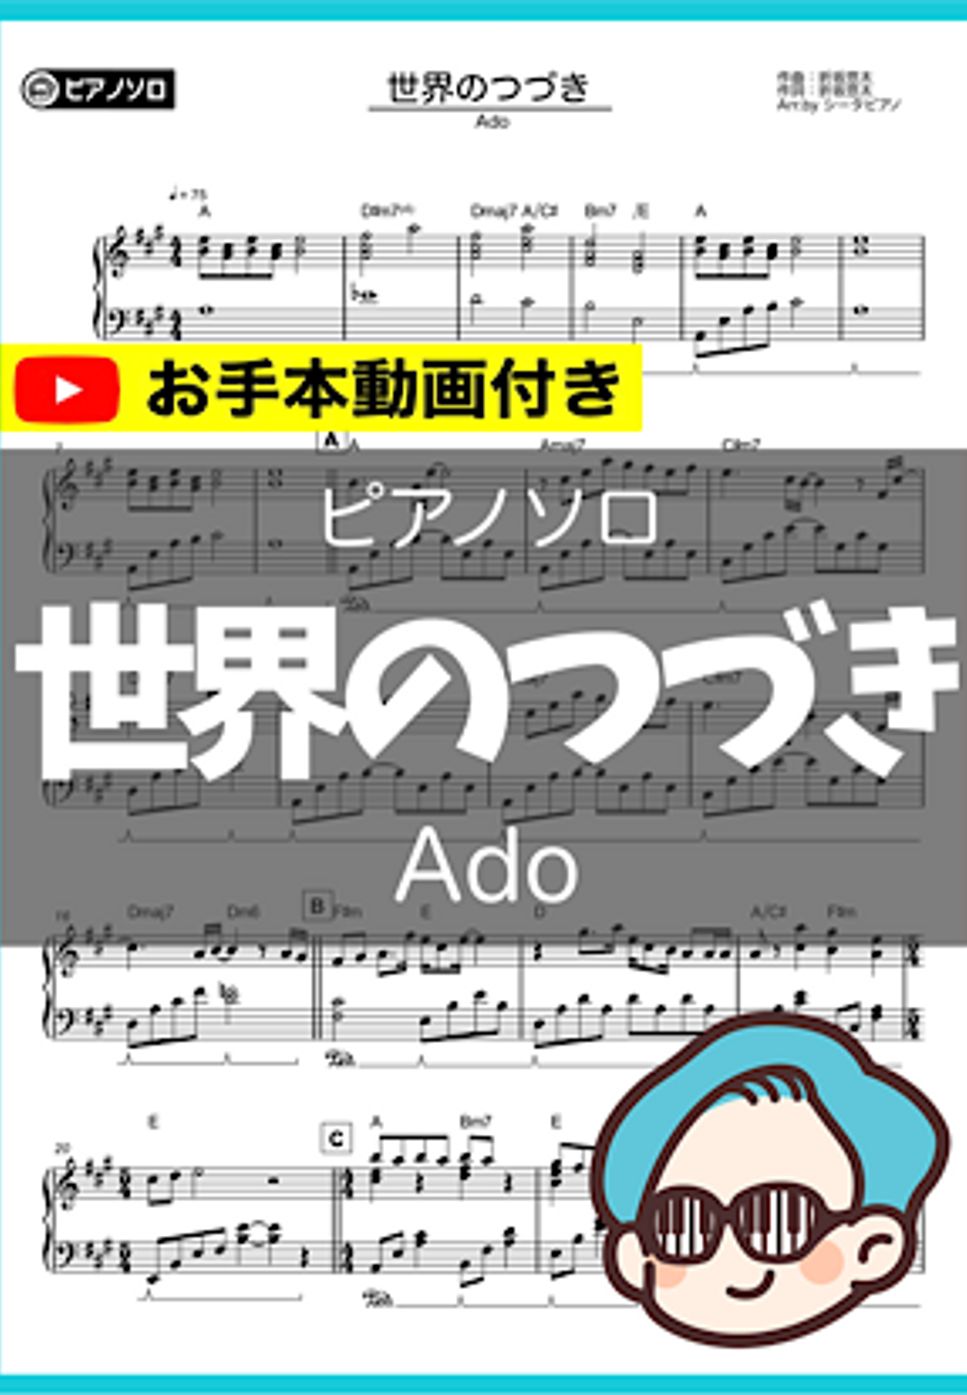 Ado - 世界のつづき by シータピアノ